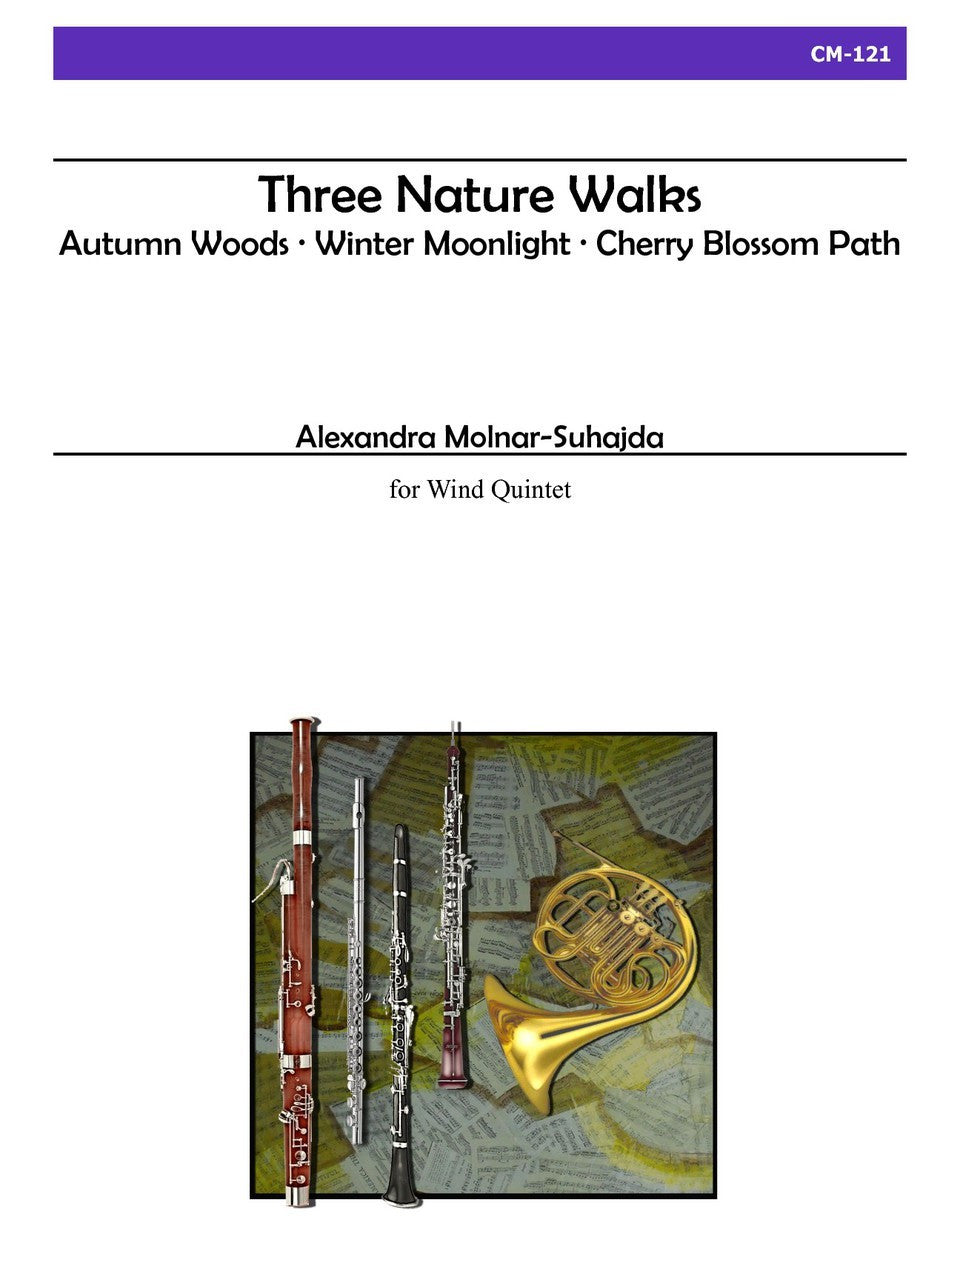 Molnar-Suhajda - Three Nature Walks for Wind Quintet